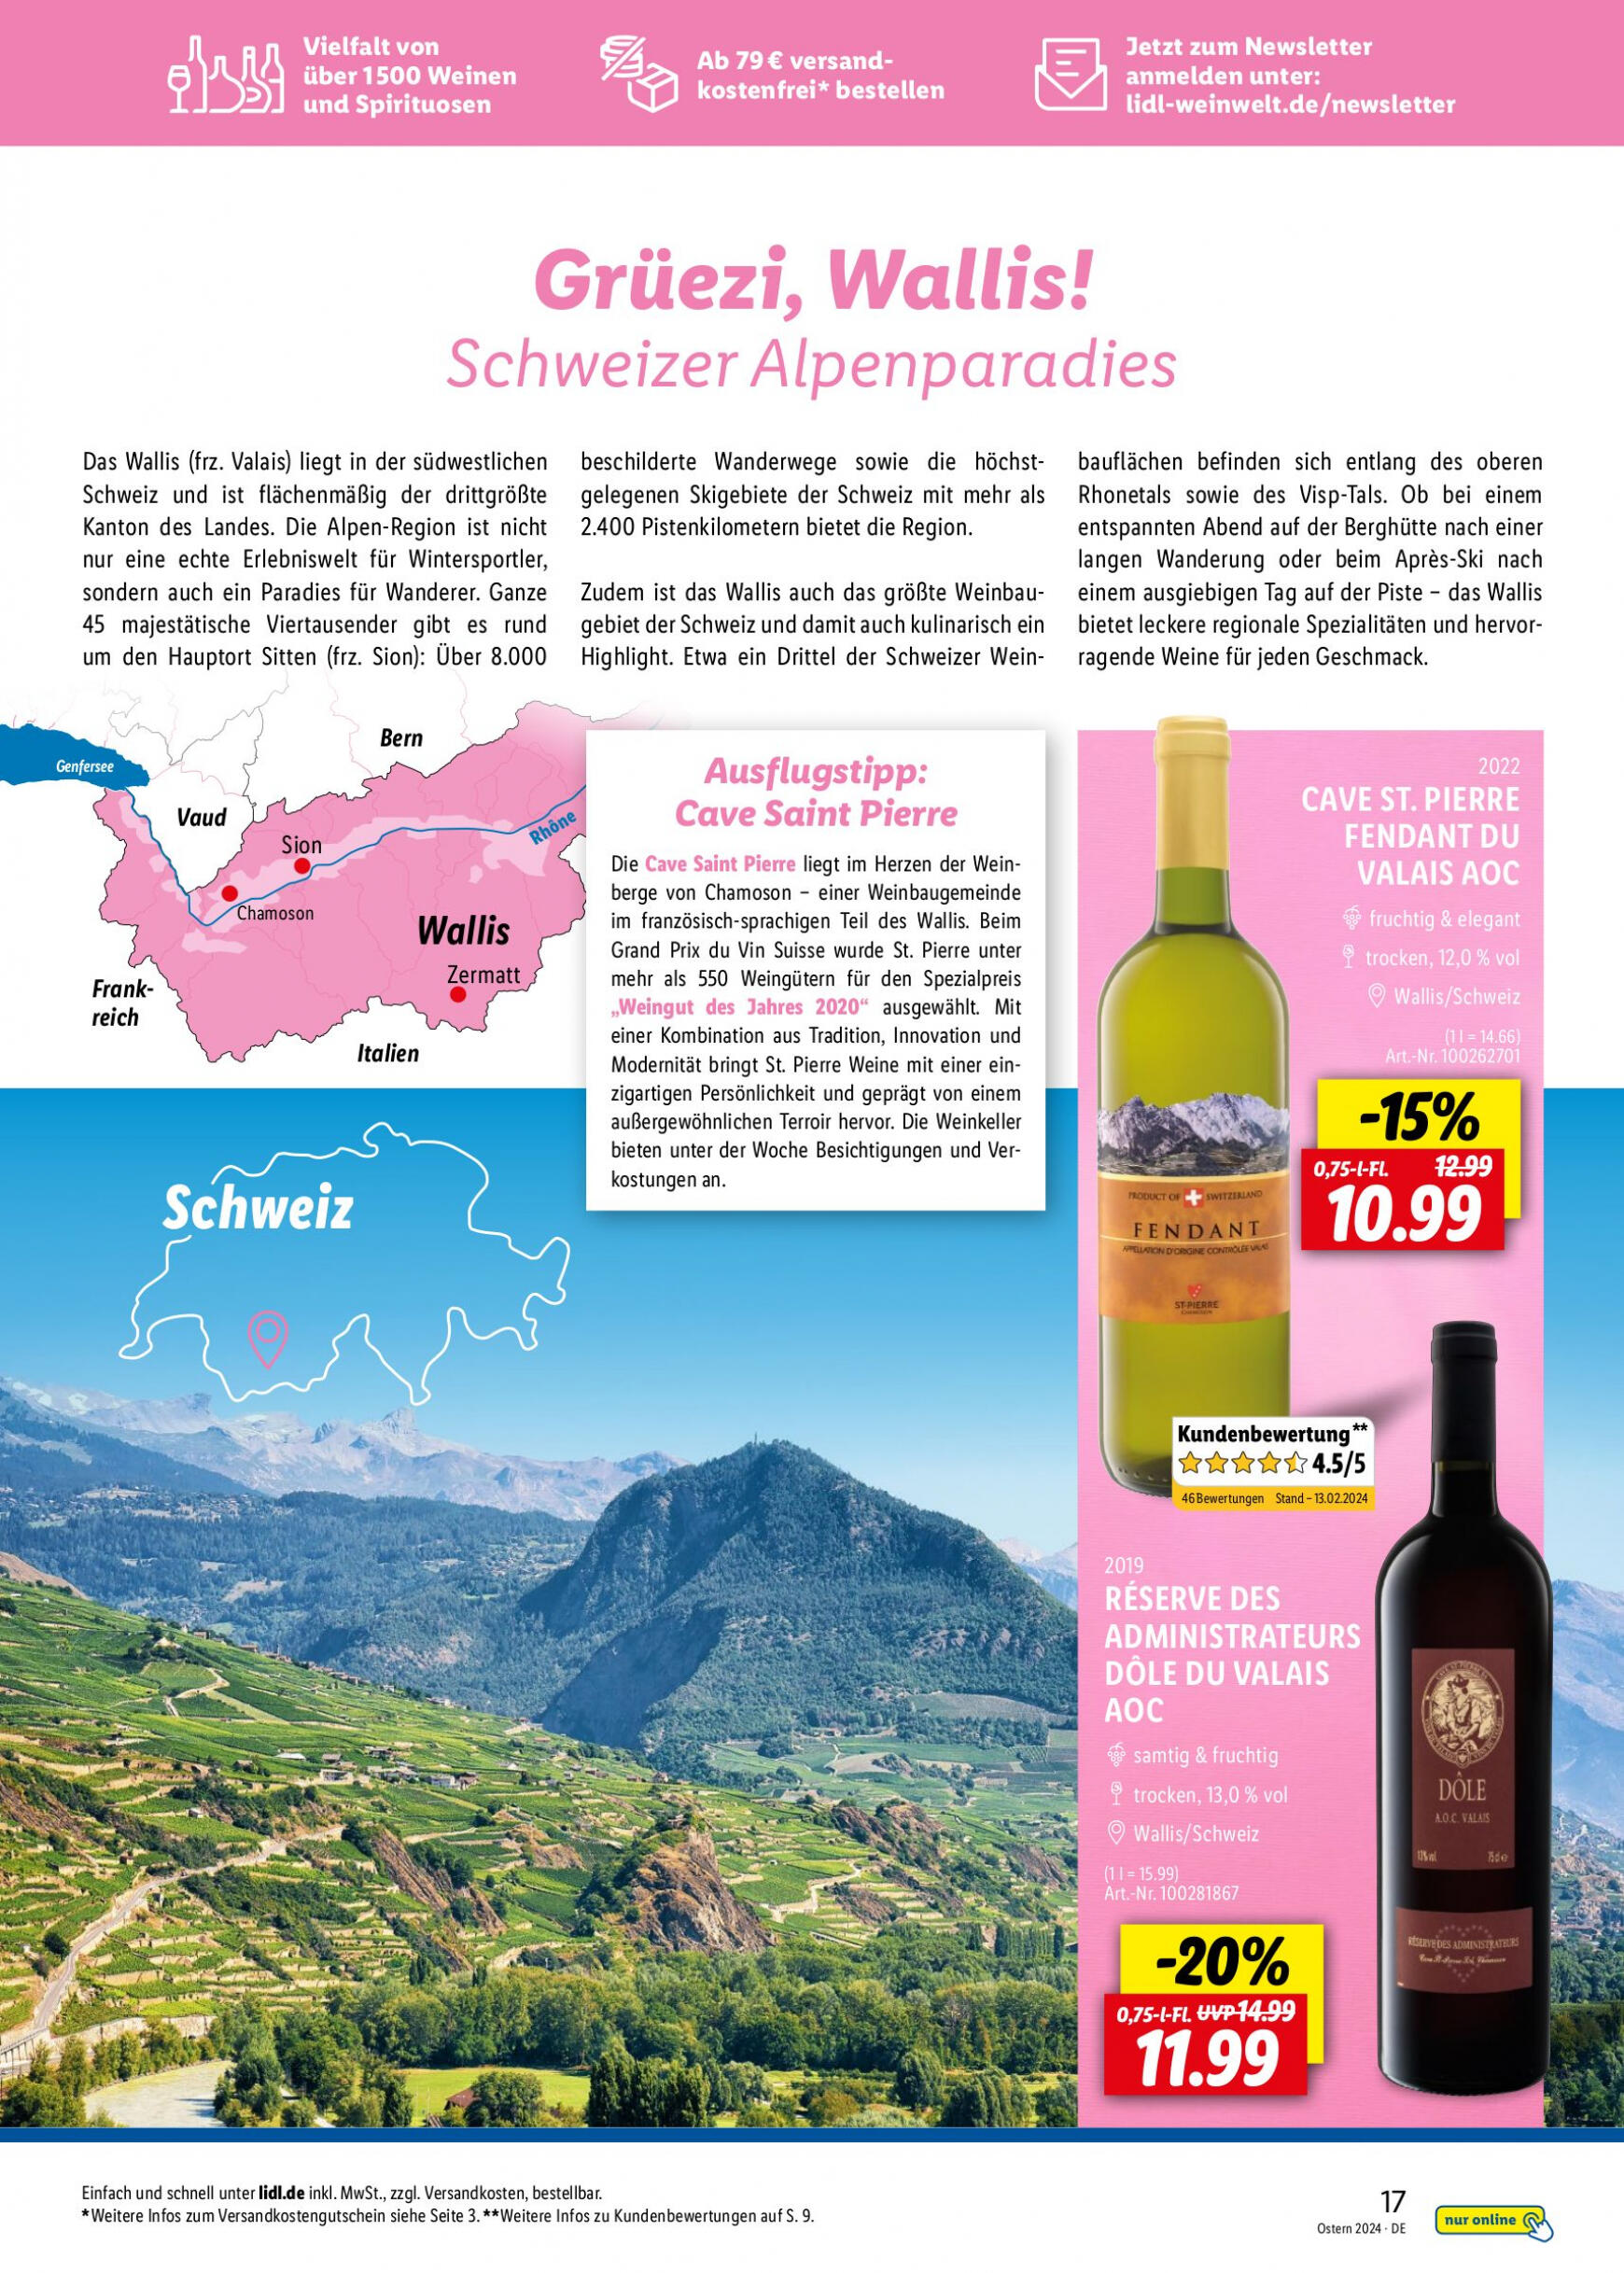 lidl - Flyer Lidl - Wein Entkorkt aktuell 04.03. - 30.04. - page: 17